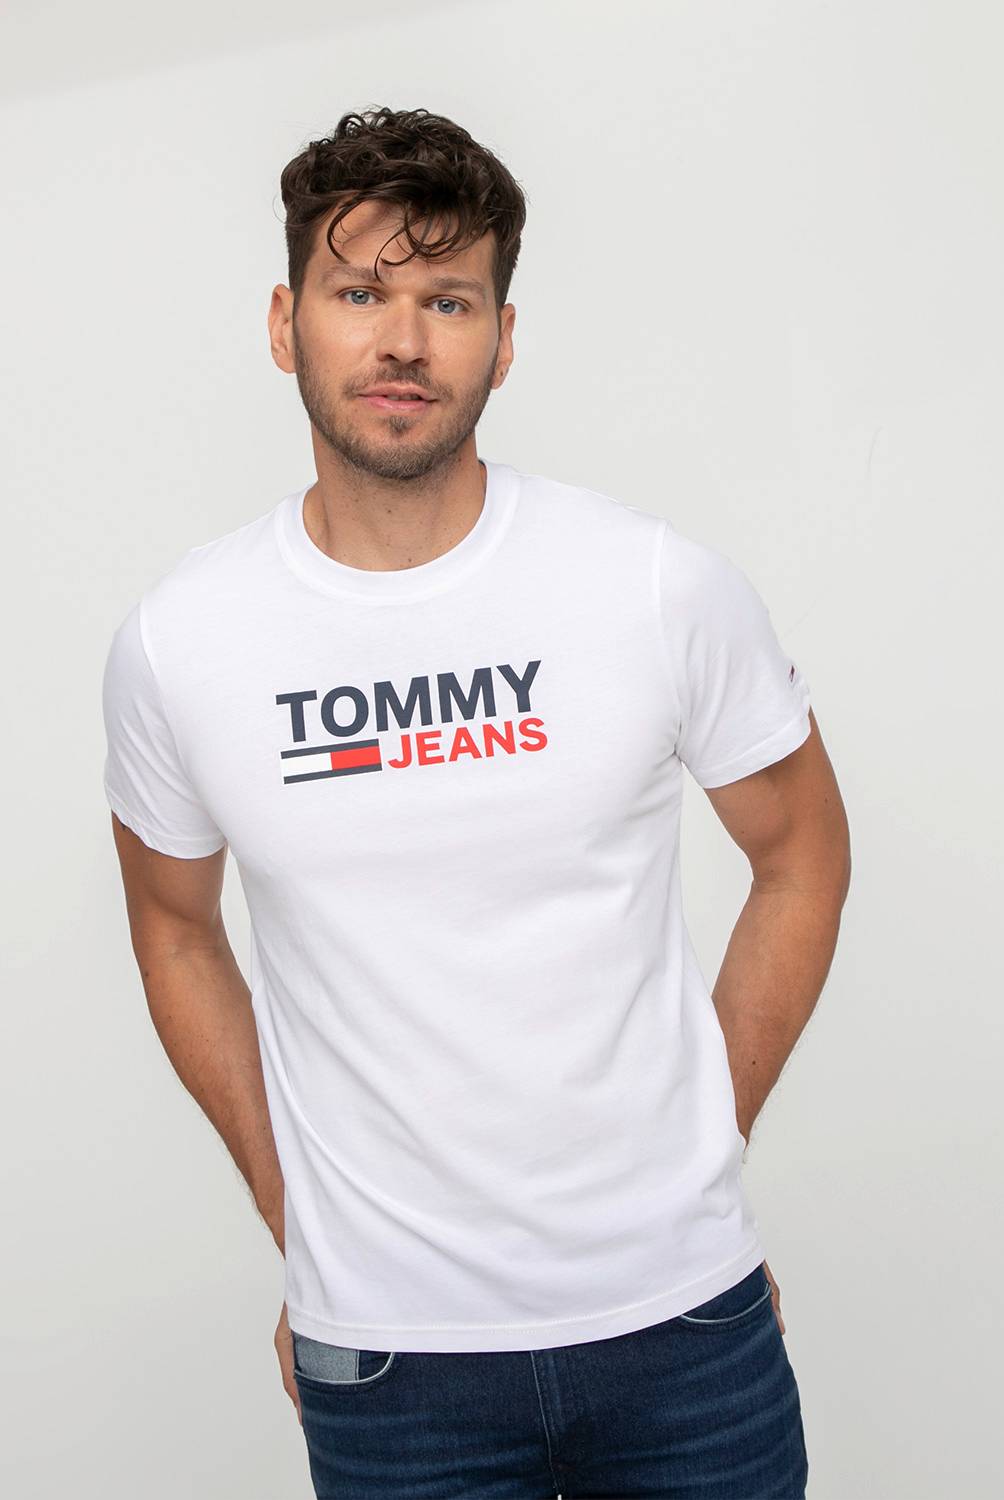 TOMMY JEANS_MC - Polera Manga Corta Hombre Tommy Jeans